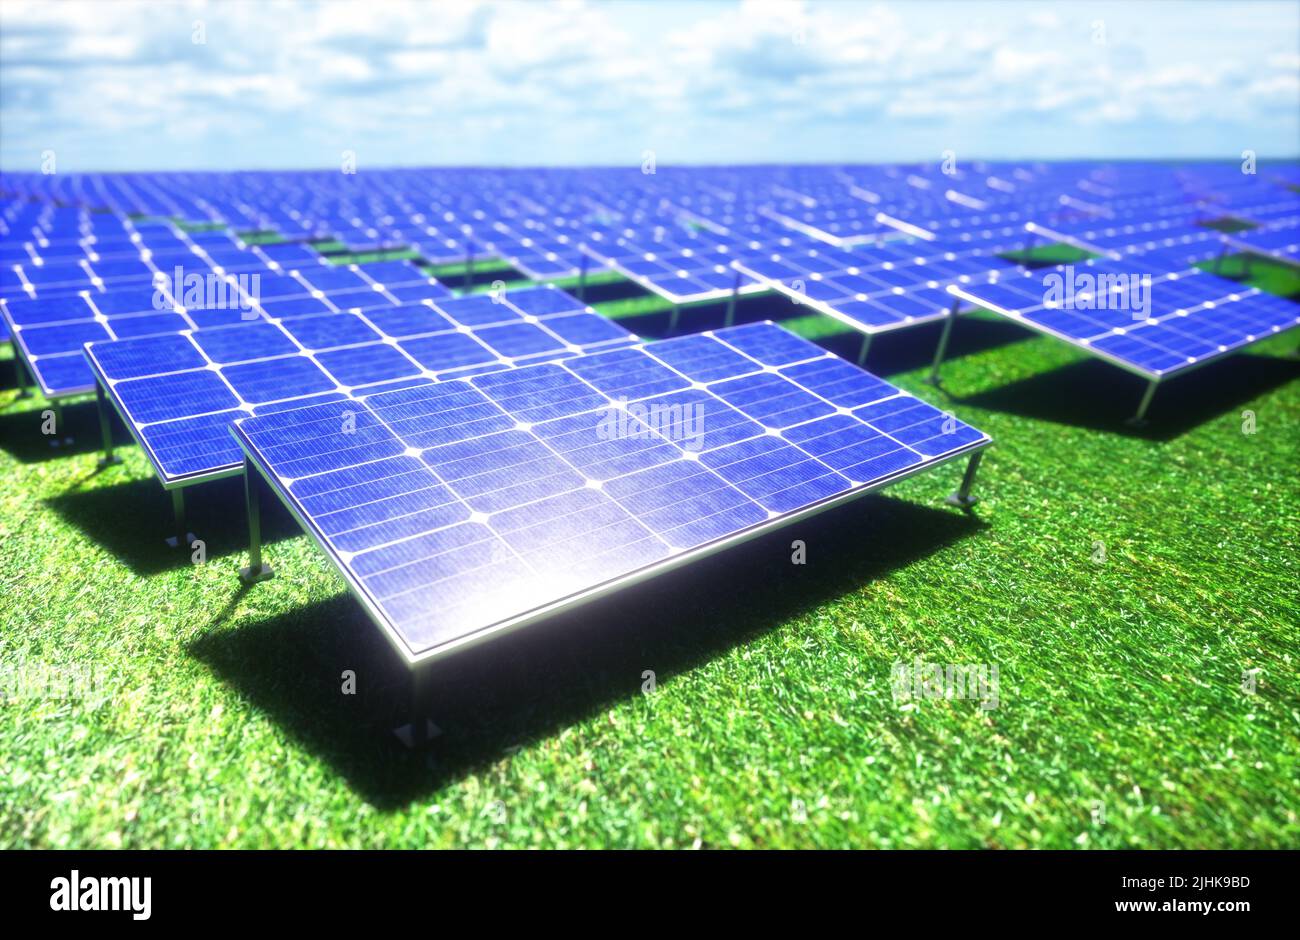 Ilustración 3D. Los paneles solares se extienden a través del campo sobre la hierba verde. Energía limpia para proteger el medio ambiente. Foto de stock